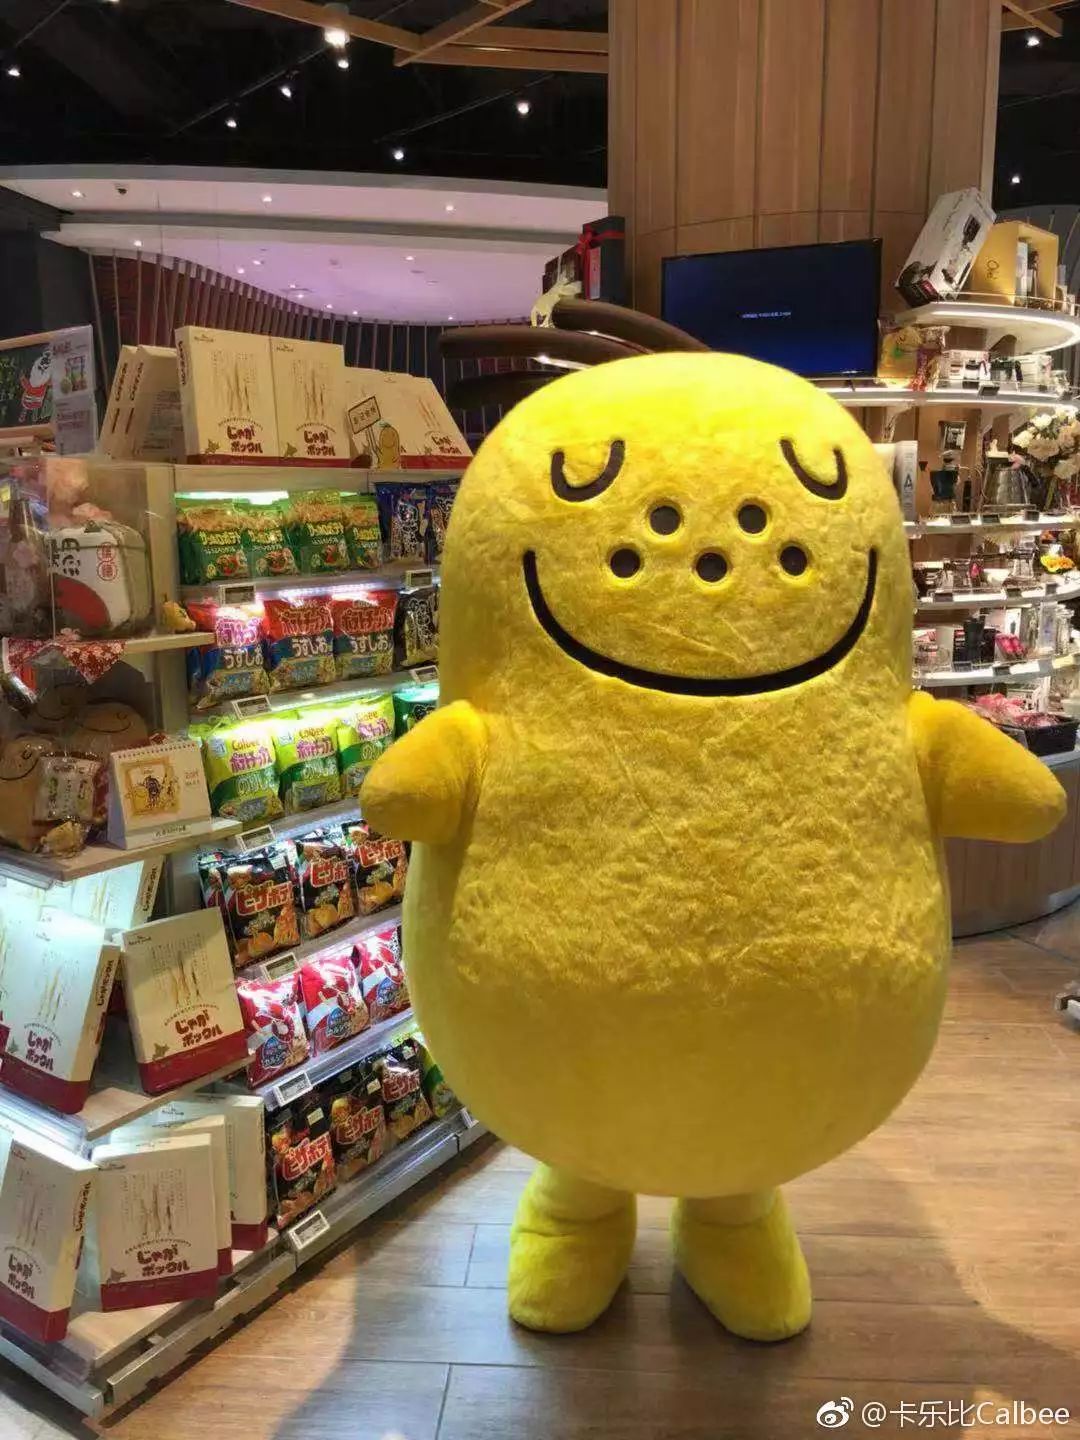 【日本食品巨头】看日本零食巨头卡乐比如何占据你的心智